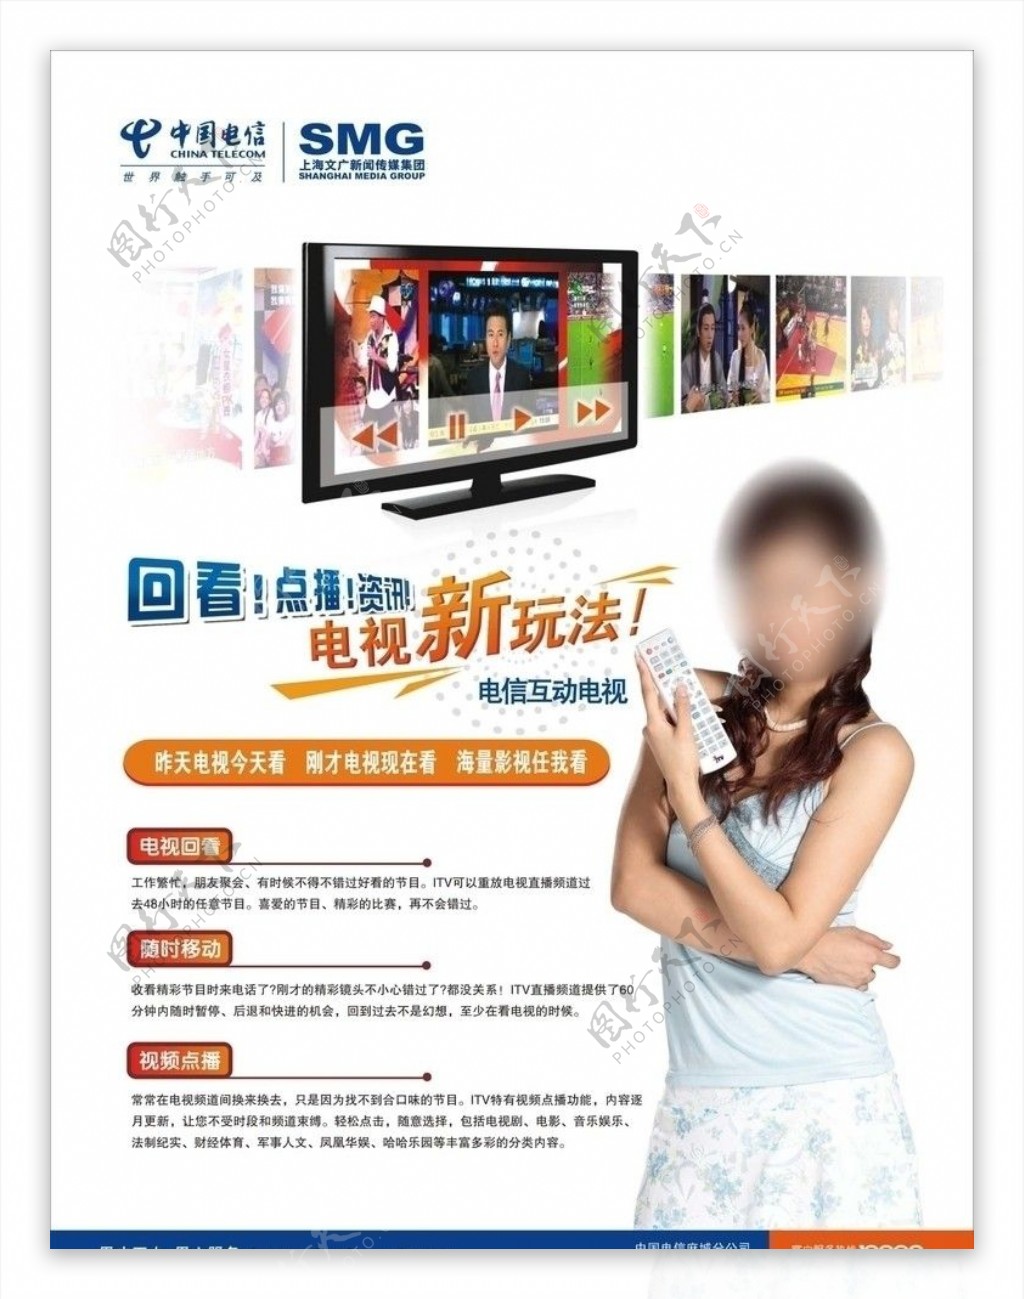 中国电信电视新看法图片